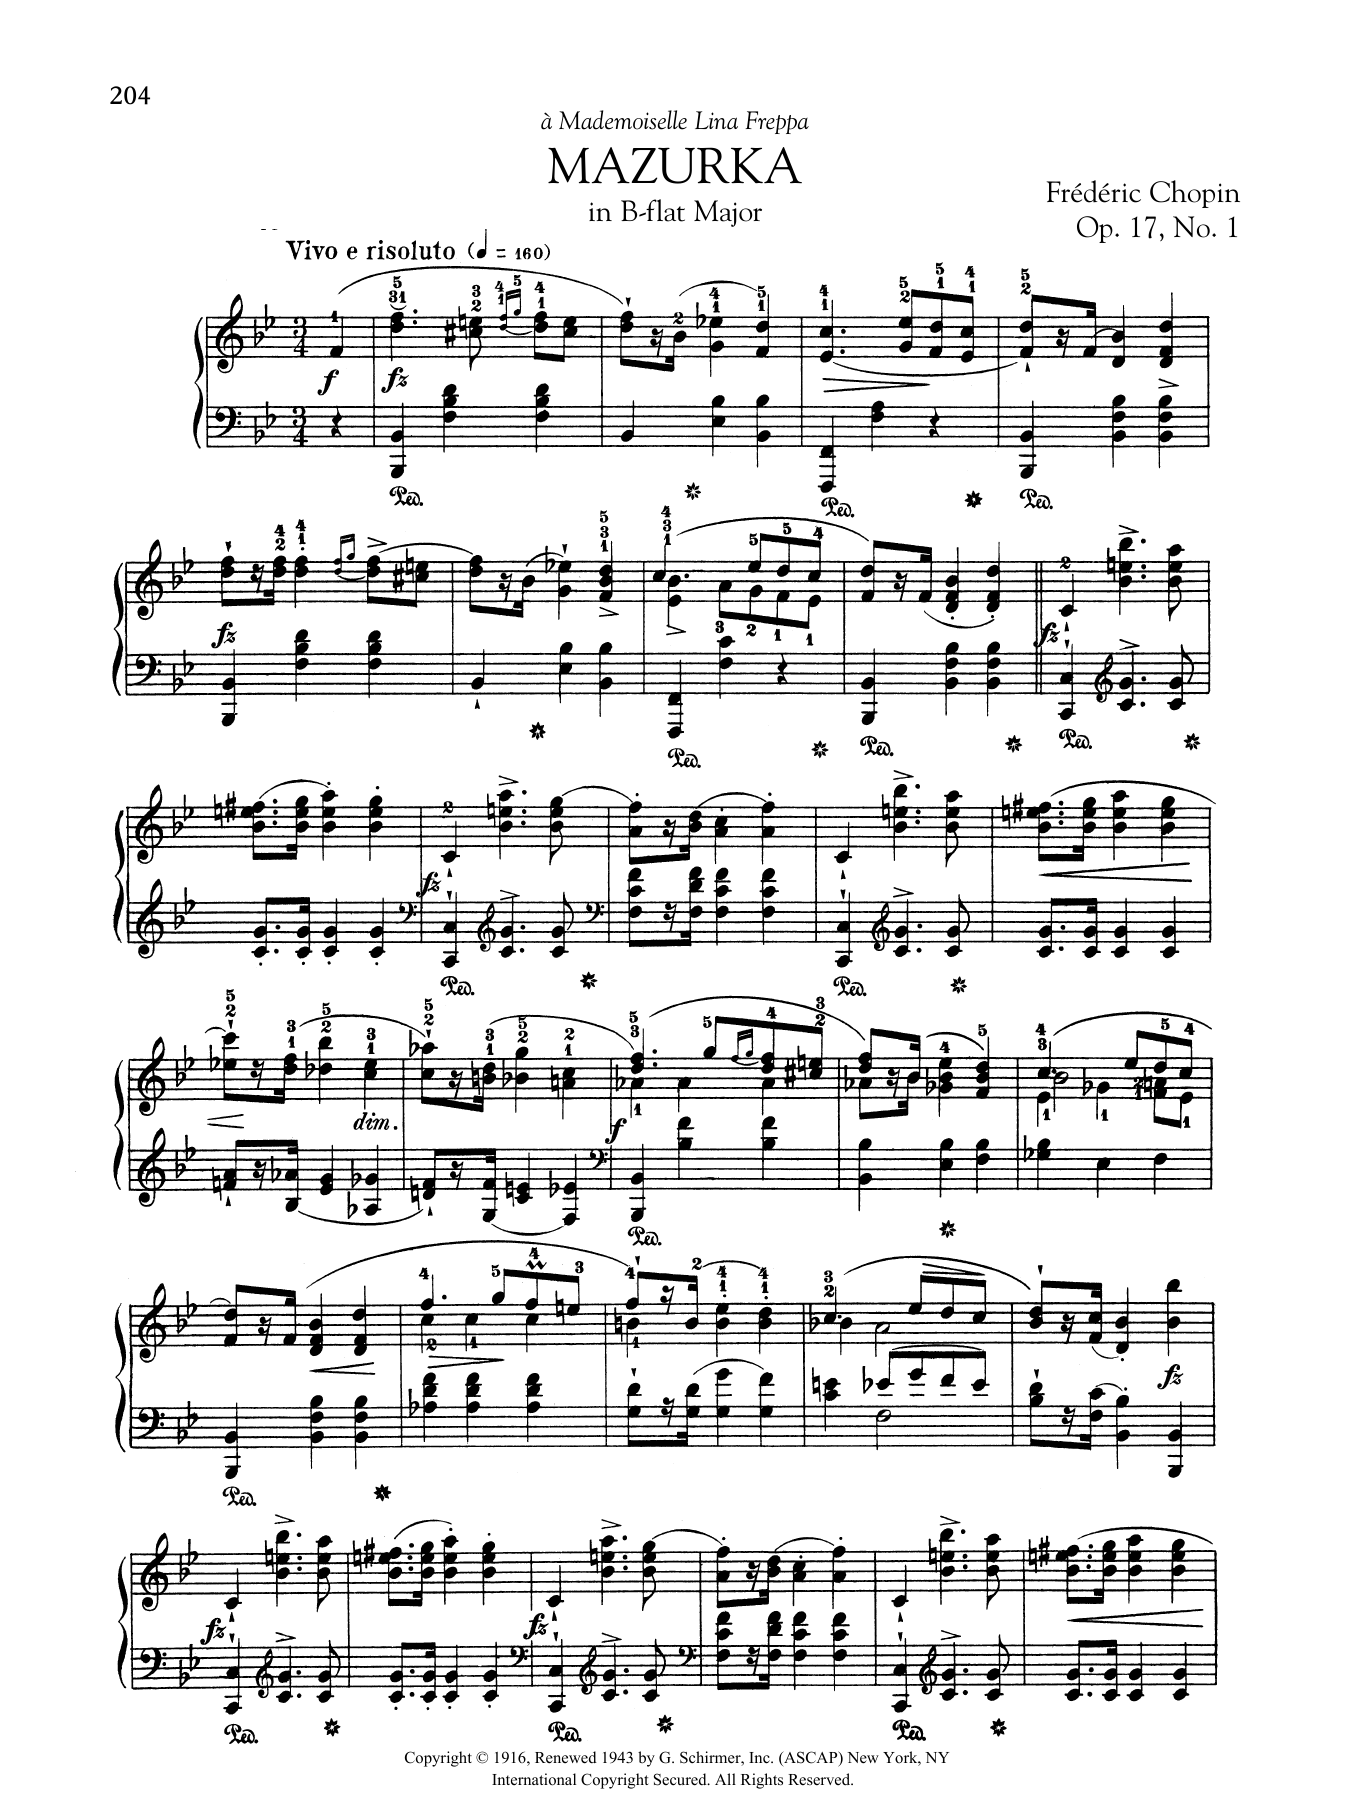 Download Frederic Chopin Mazurka in B-flat Major, Op. 17, No. 1 Sheet Music